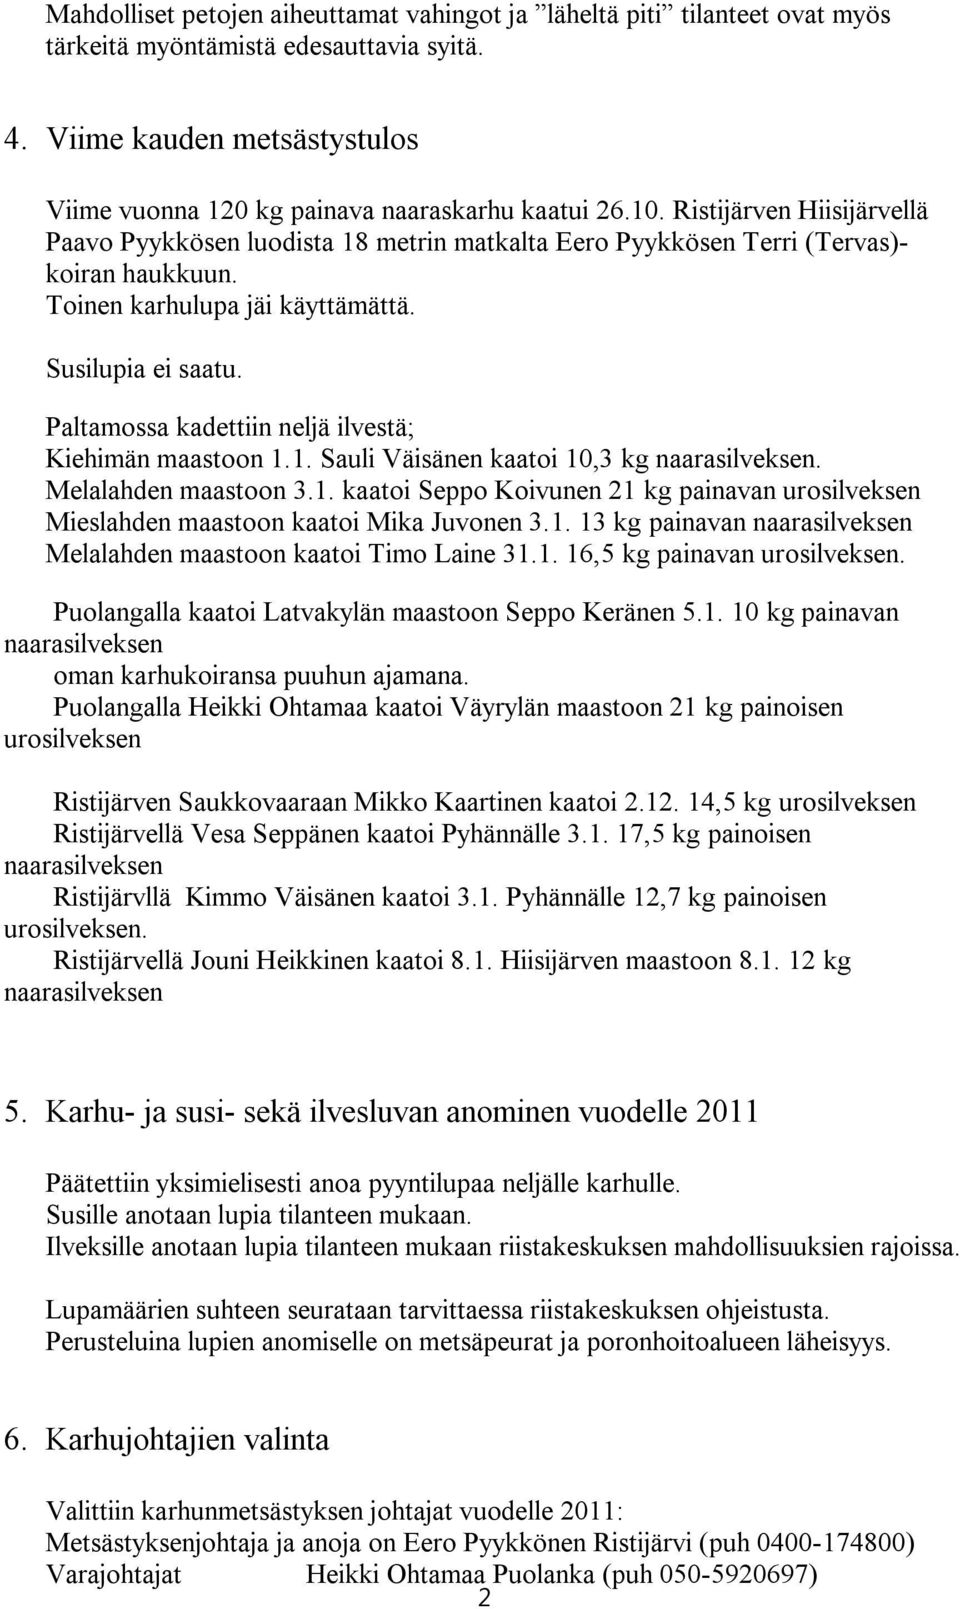 Paltamossa kadettiin neljä ilvestä; Kiehimän maastoon 1.1. Sauli Väisänen kaatoi 10,3 kg. Melalahden maastoon 3.1. kaatoi Seppo Koivunen 21 kg painavan urosilveksen Mieslahden maastoon kaatoi Mika Juvonen 3.